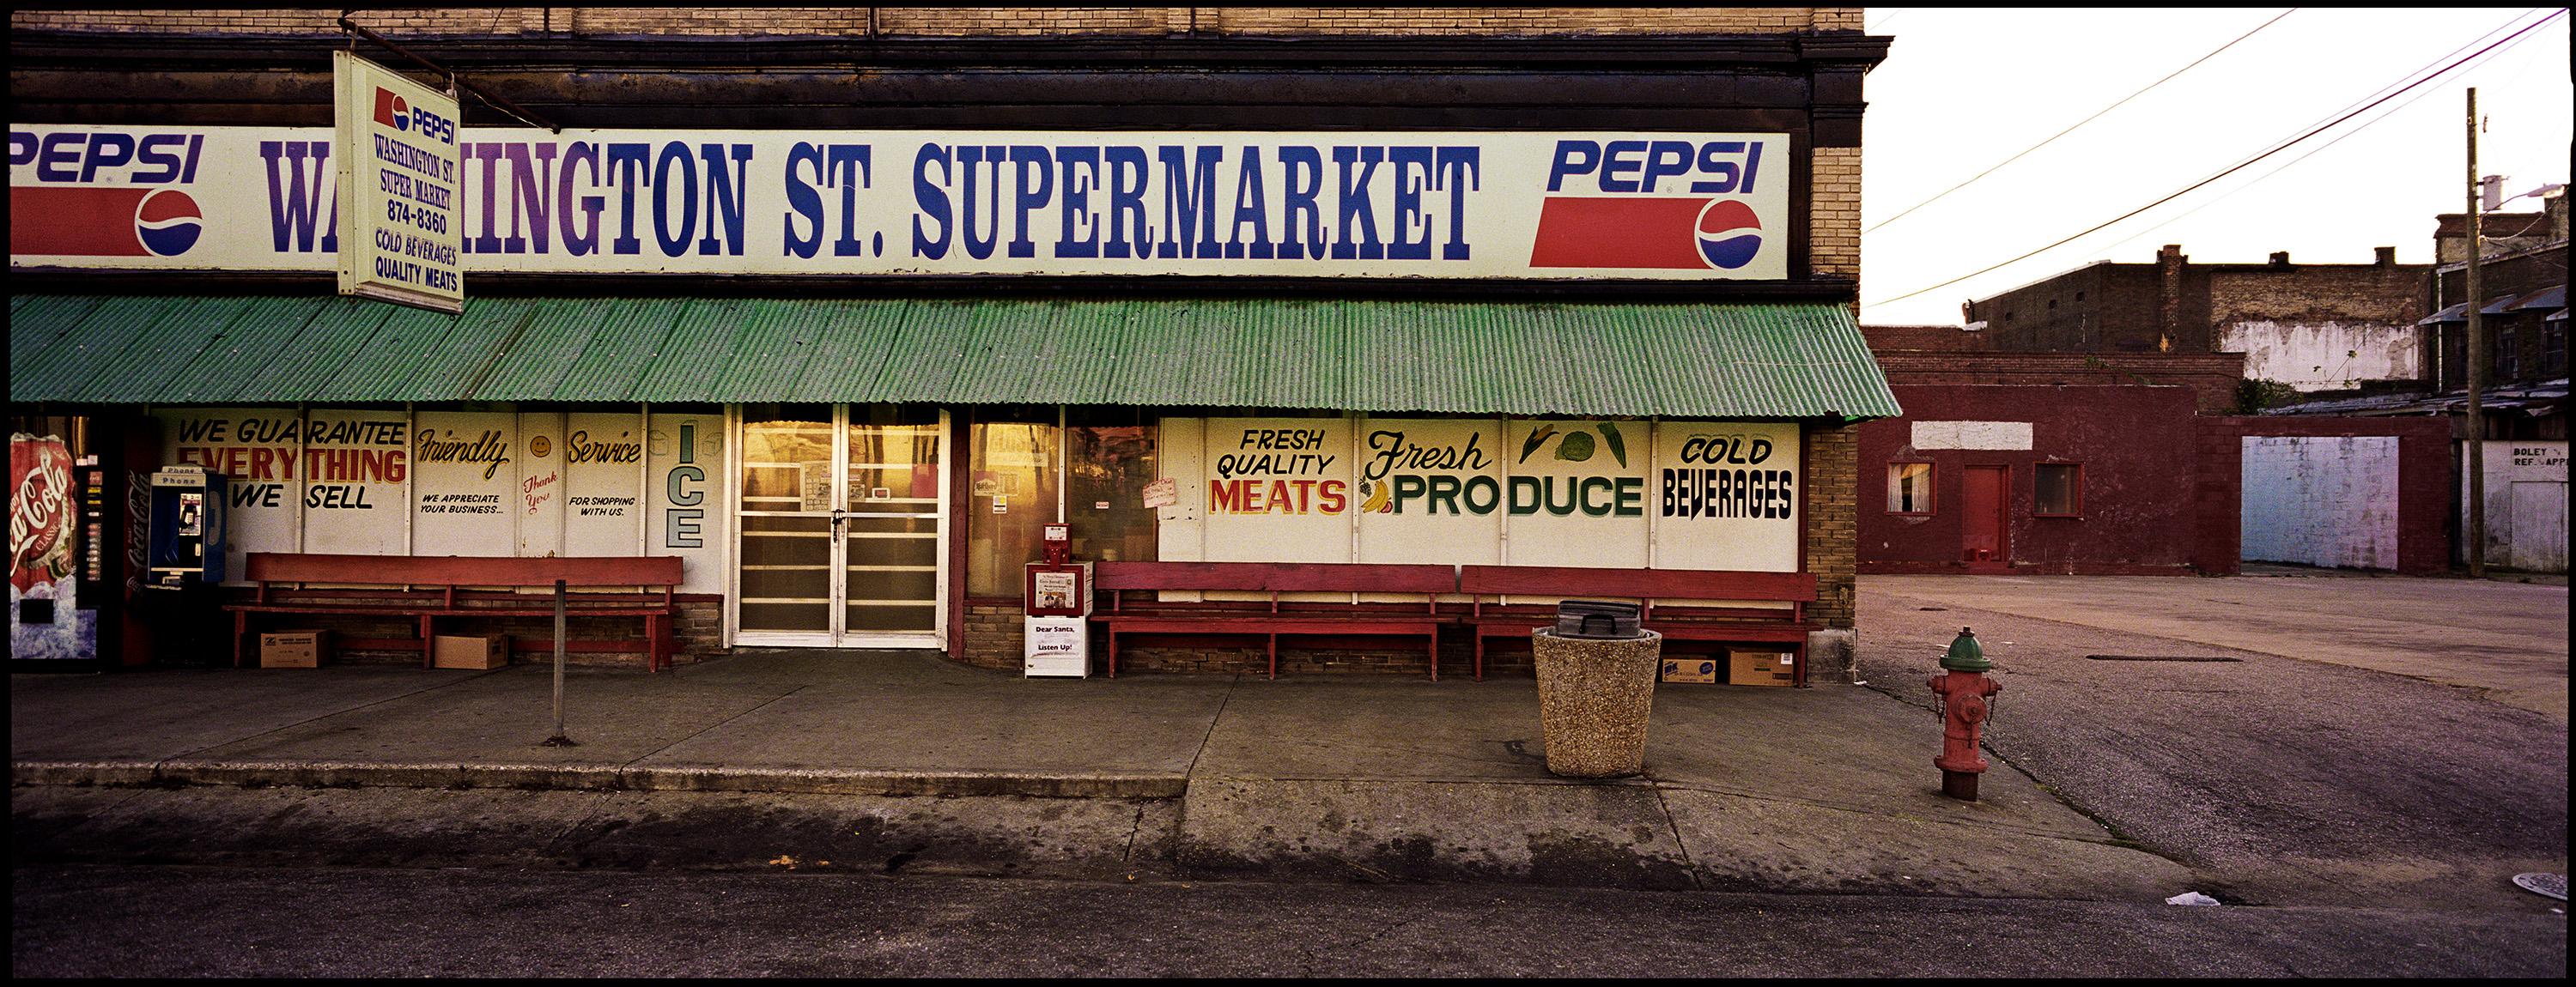 Landscape Photograph Jerry Siegel - Washington Street Market, Selma, AL - Photographie du Sud - Christenberry